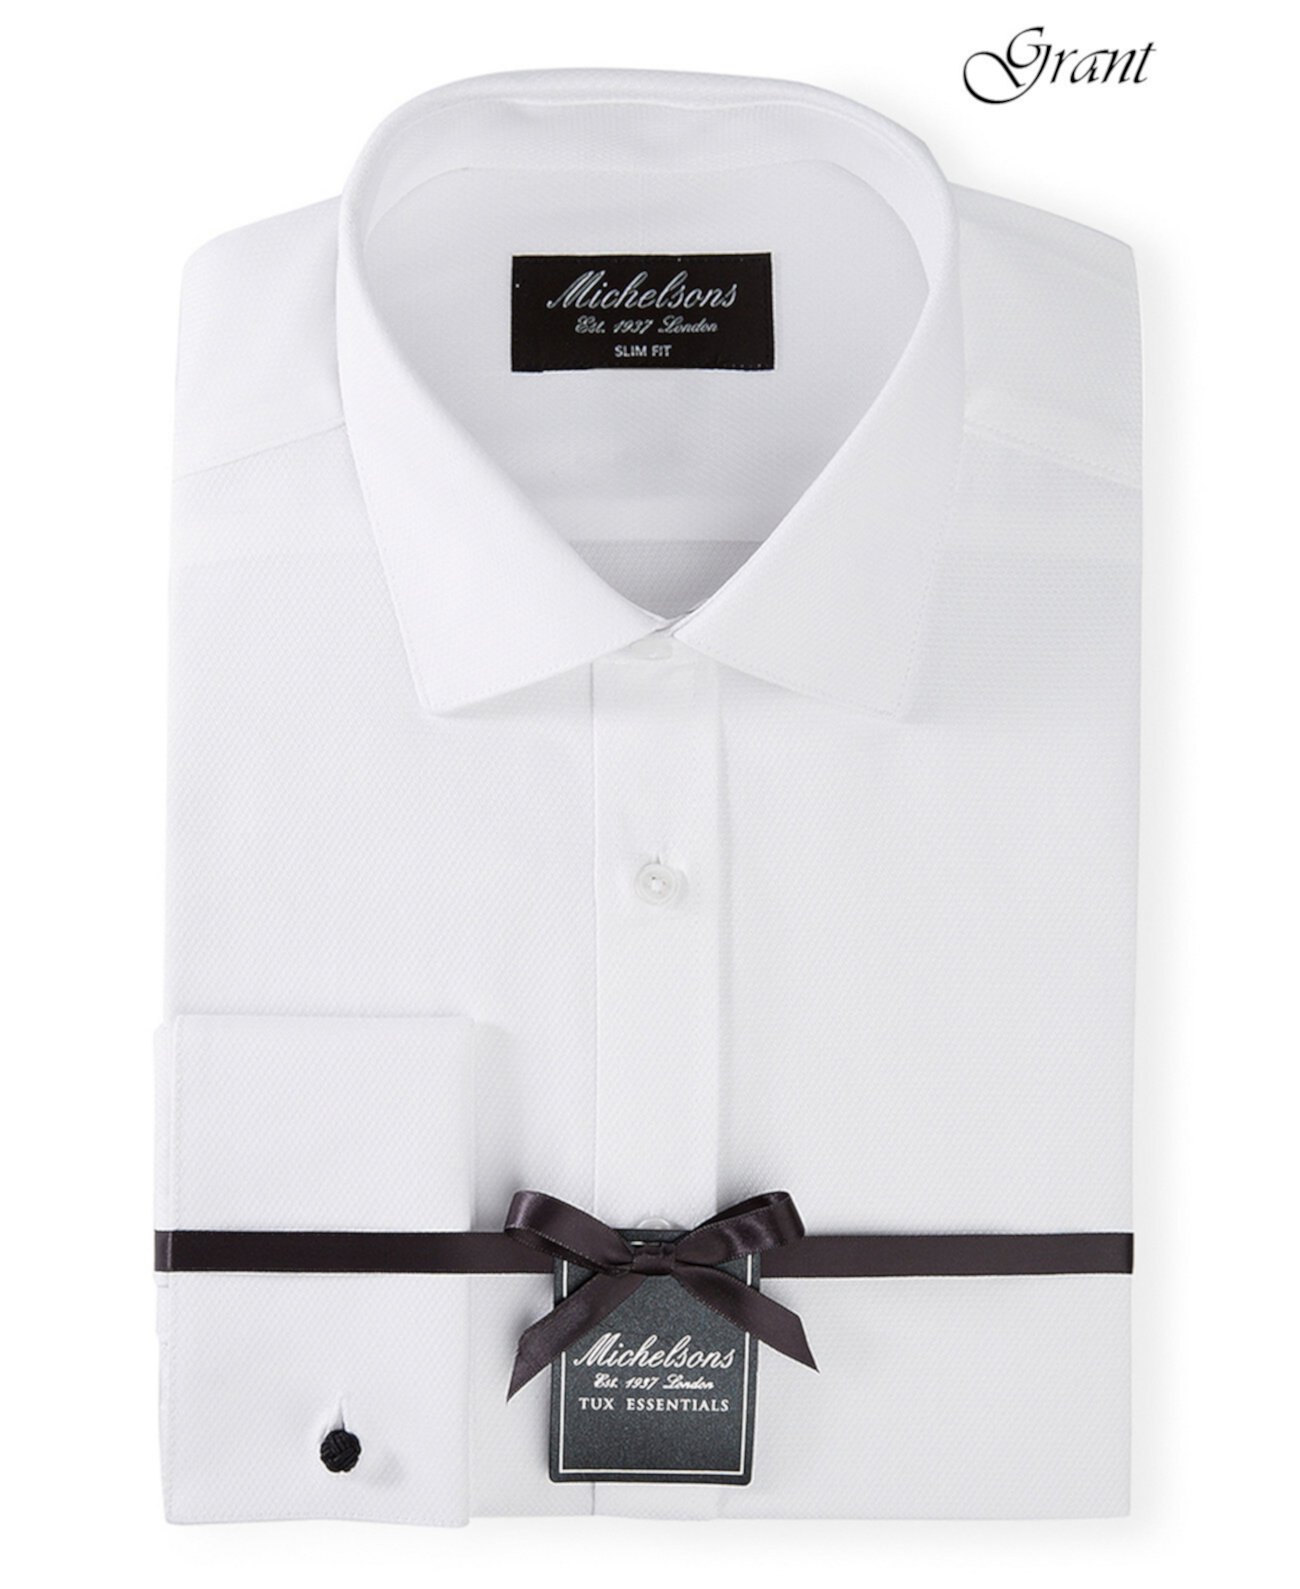 of London Мужская облегающая рубашка со смокинговым вырезом из плотной французской ткани MICHELSONS OF LONDON